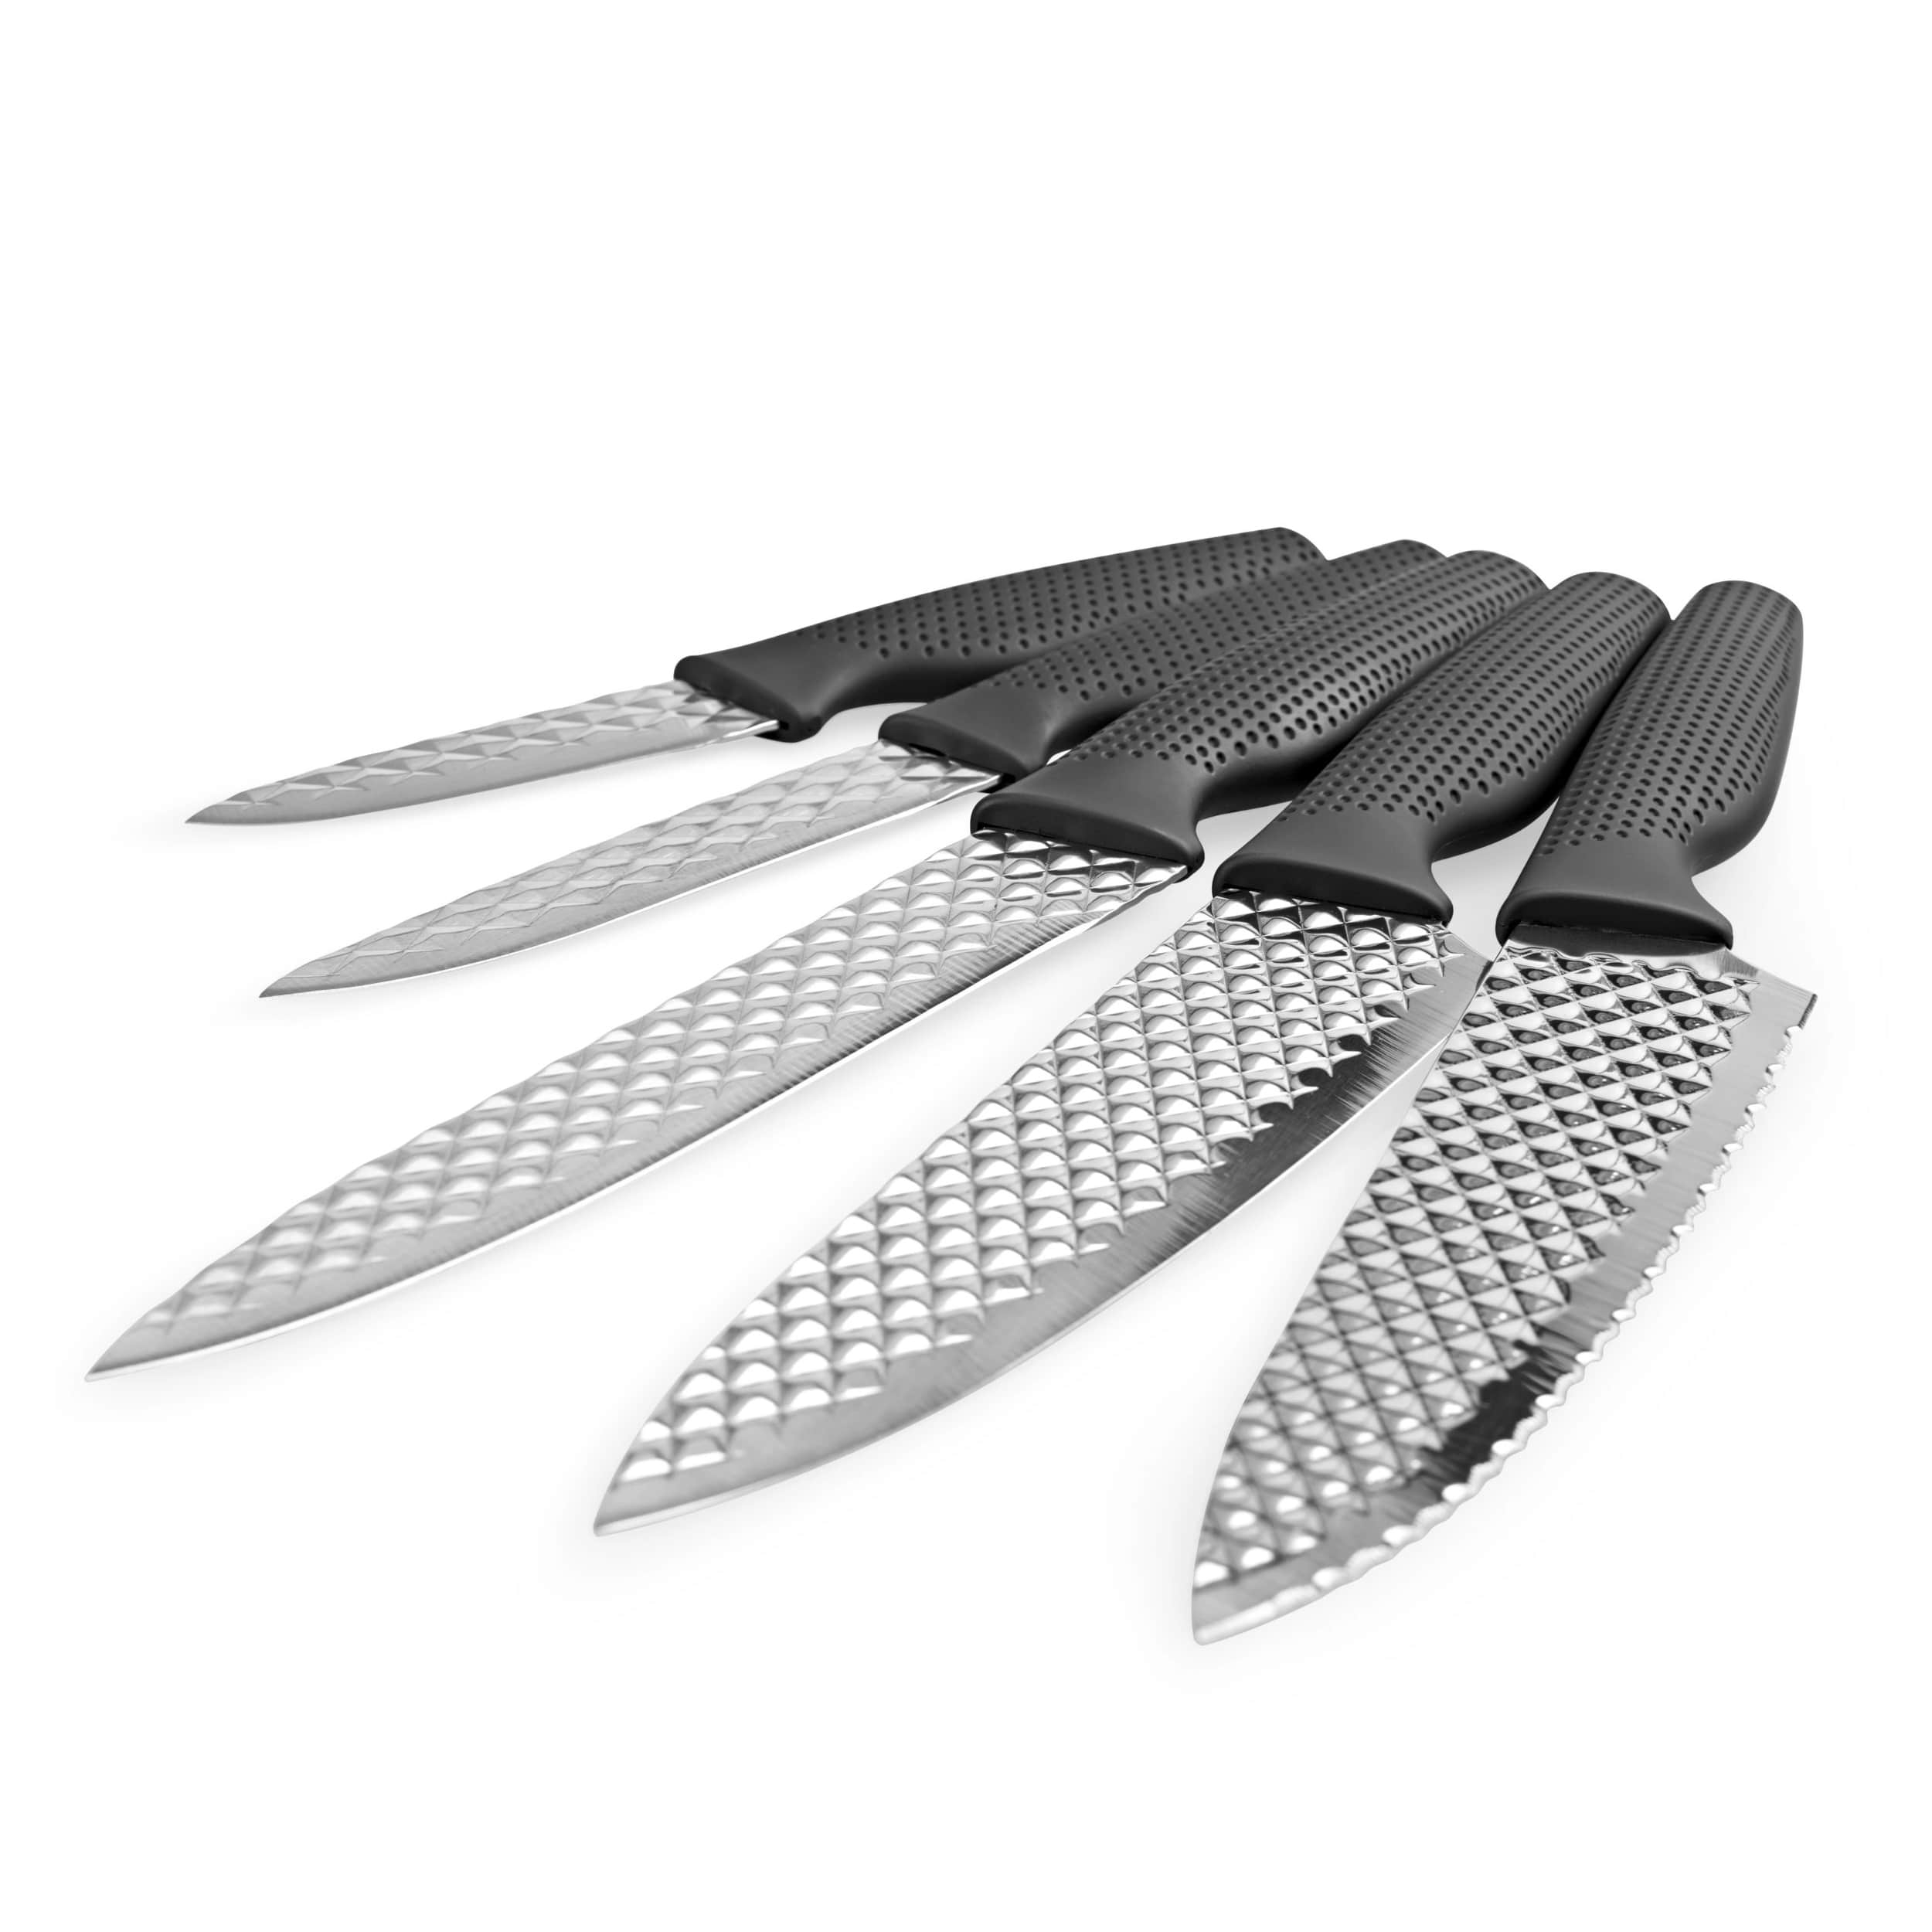 Harry Blackstone Air Blade - Kit de 5 Couteaux Complet Vu à la Tv